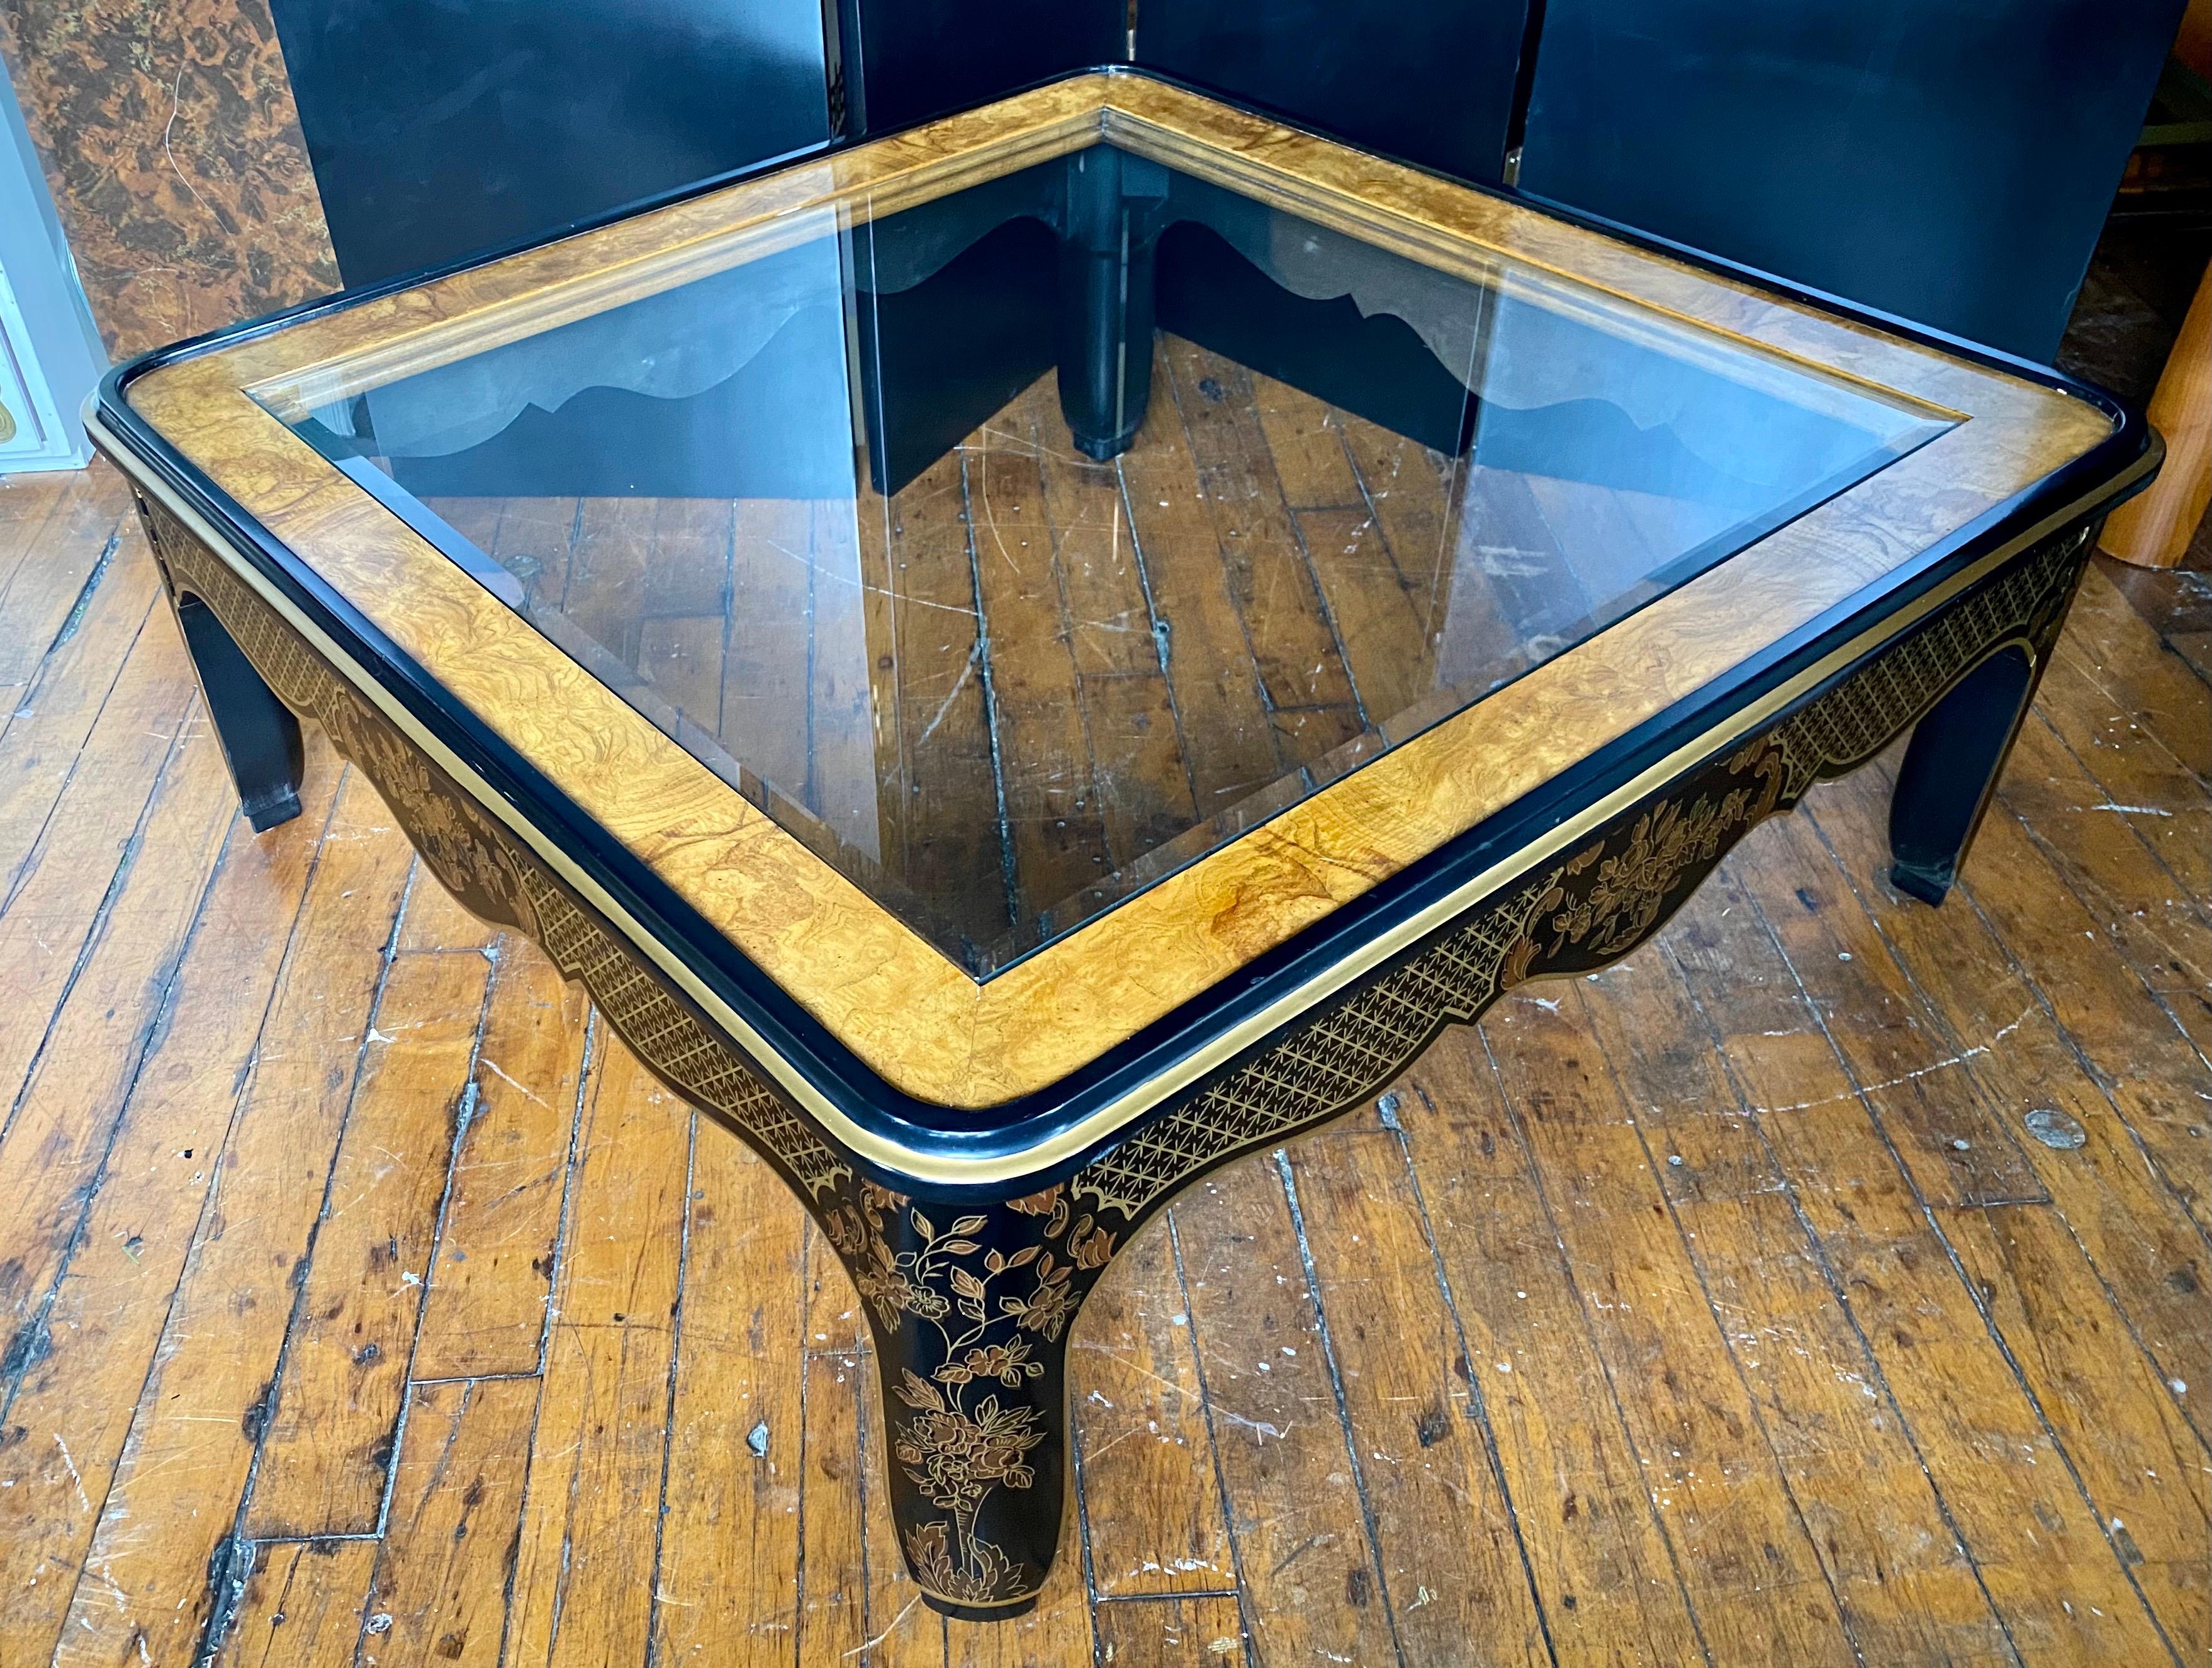 Grande table basse carrée de style Hollywood Regency en ronce de bois et verre par Drexel Furniture. Cette table de cocktail sculpturale est dotée d'un cadre original en bois noir brillant avec des détails en feuille d'or peints à la main